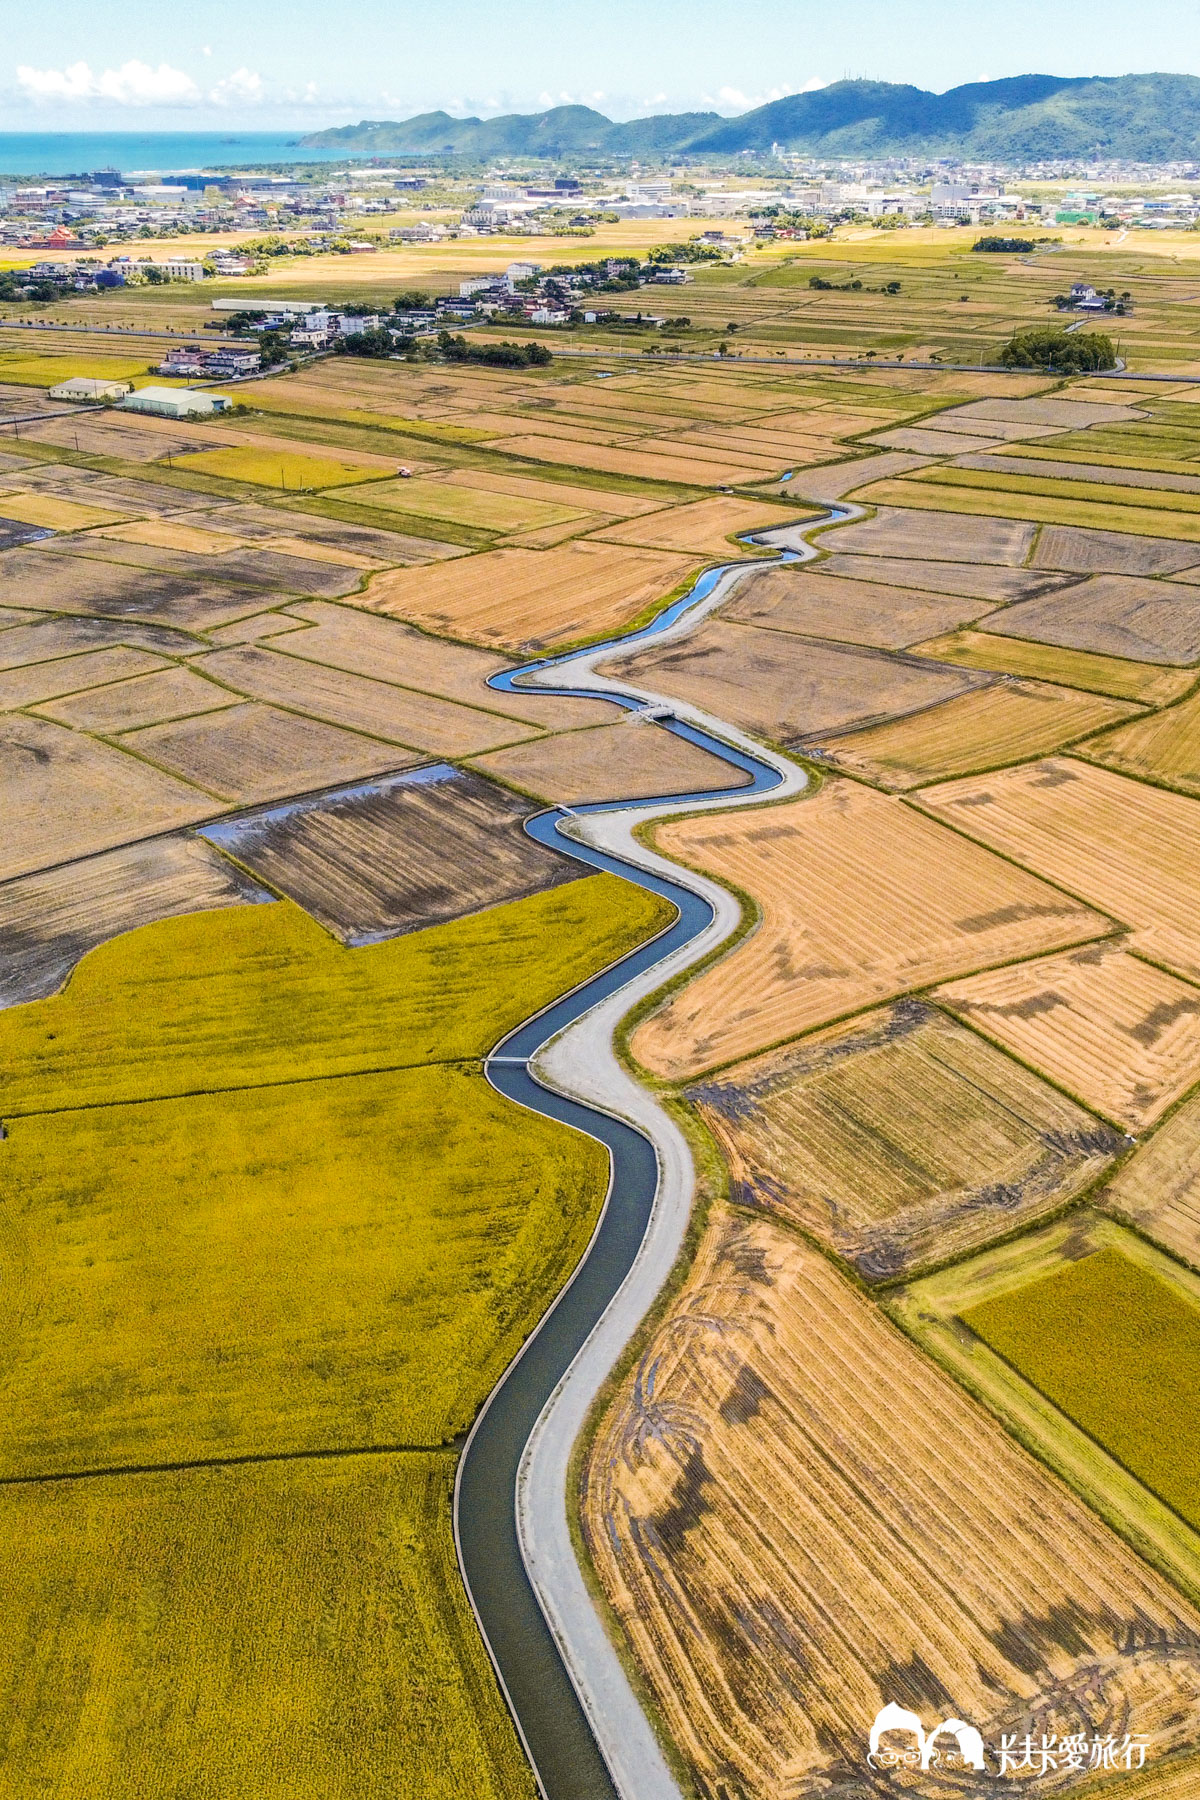 宜蘭冬山S型黃金河稻，獨木舟划船體驗，近距離欣賞三奇美徑稻田景點遊程